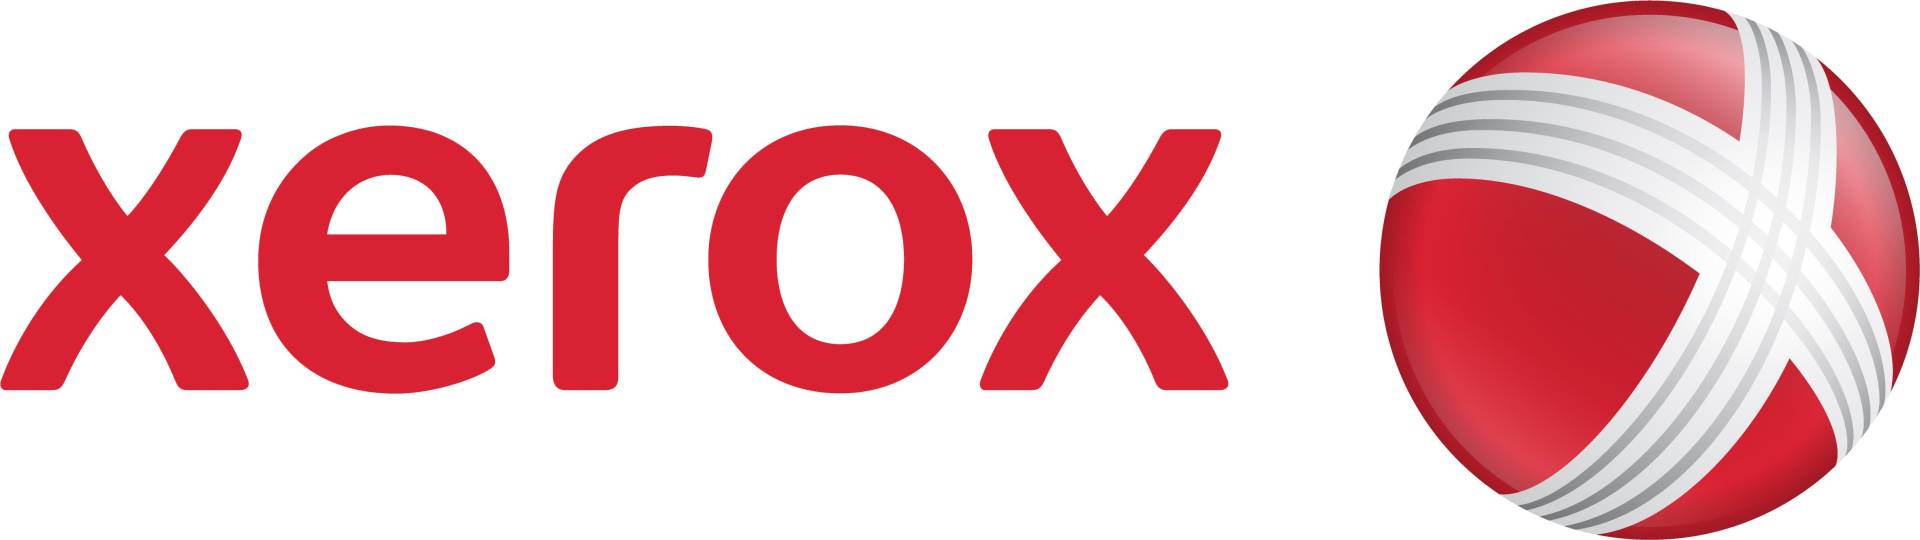 Xerox - Tonernachfüllung - für Xerox 1050, 5050, 5052, 5053 von Xerox